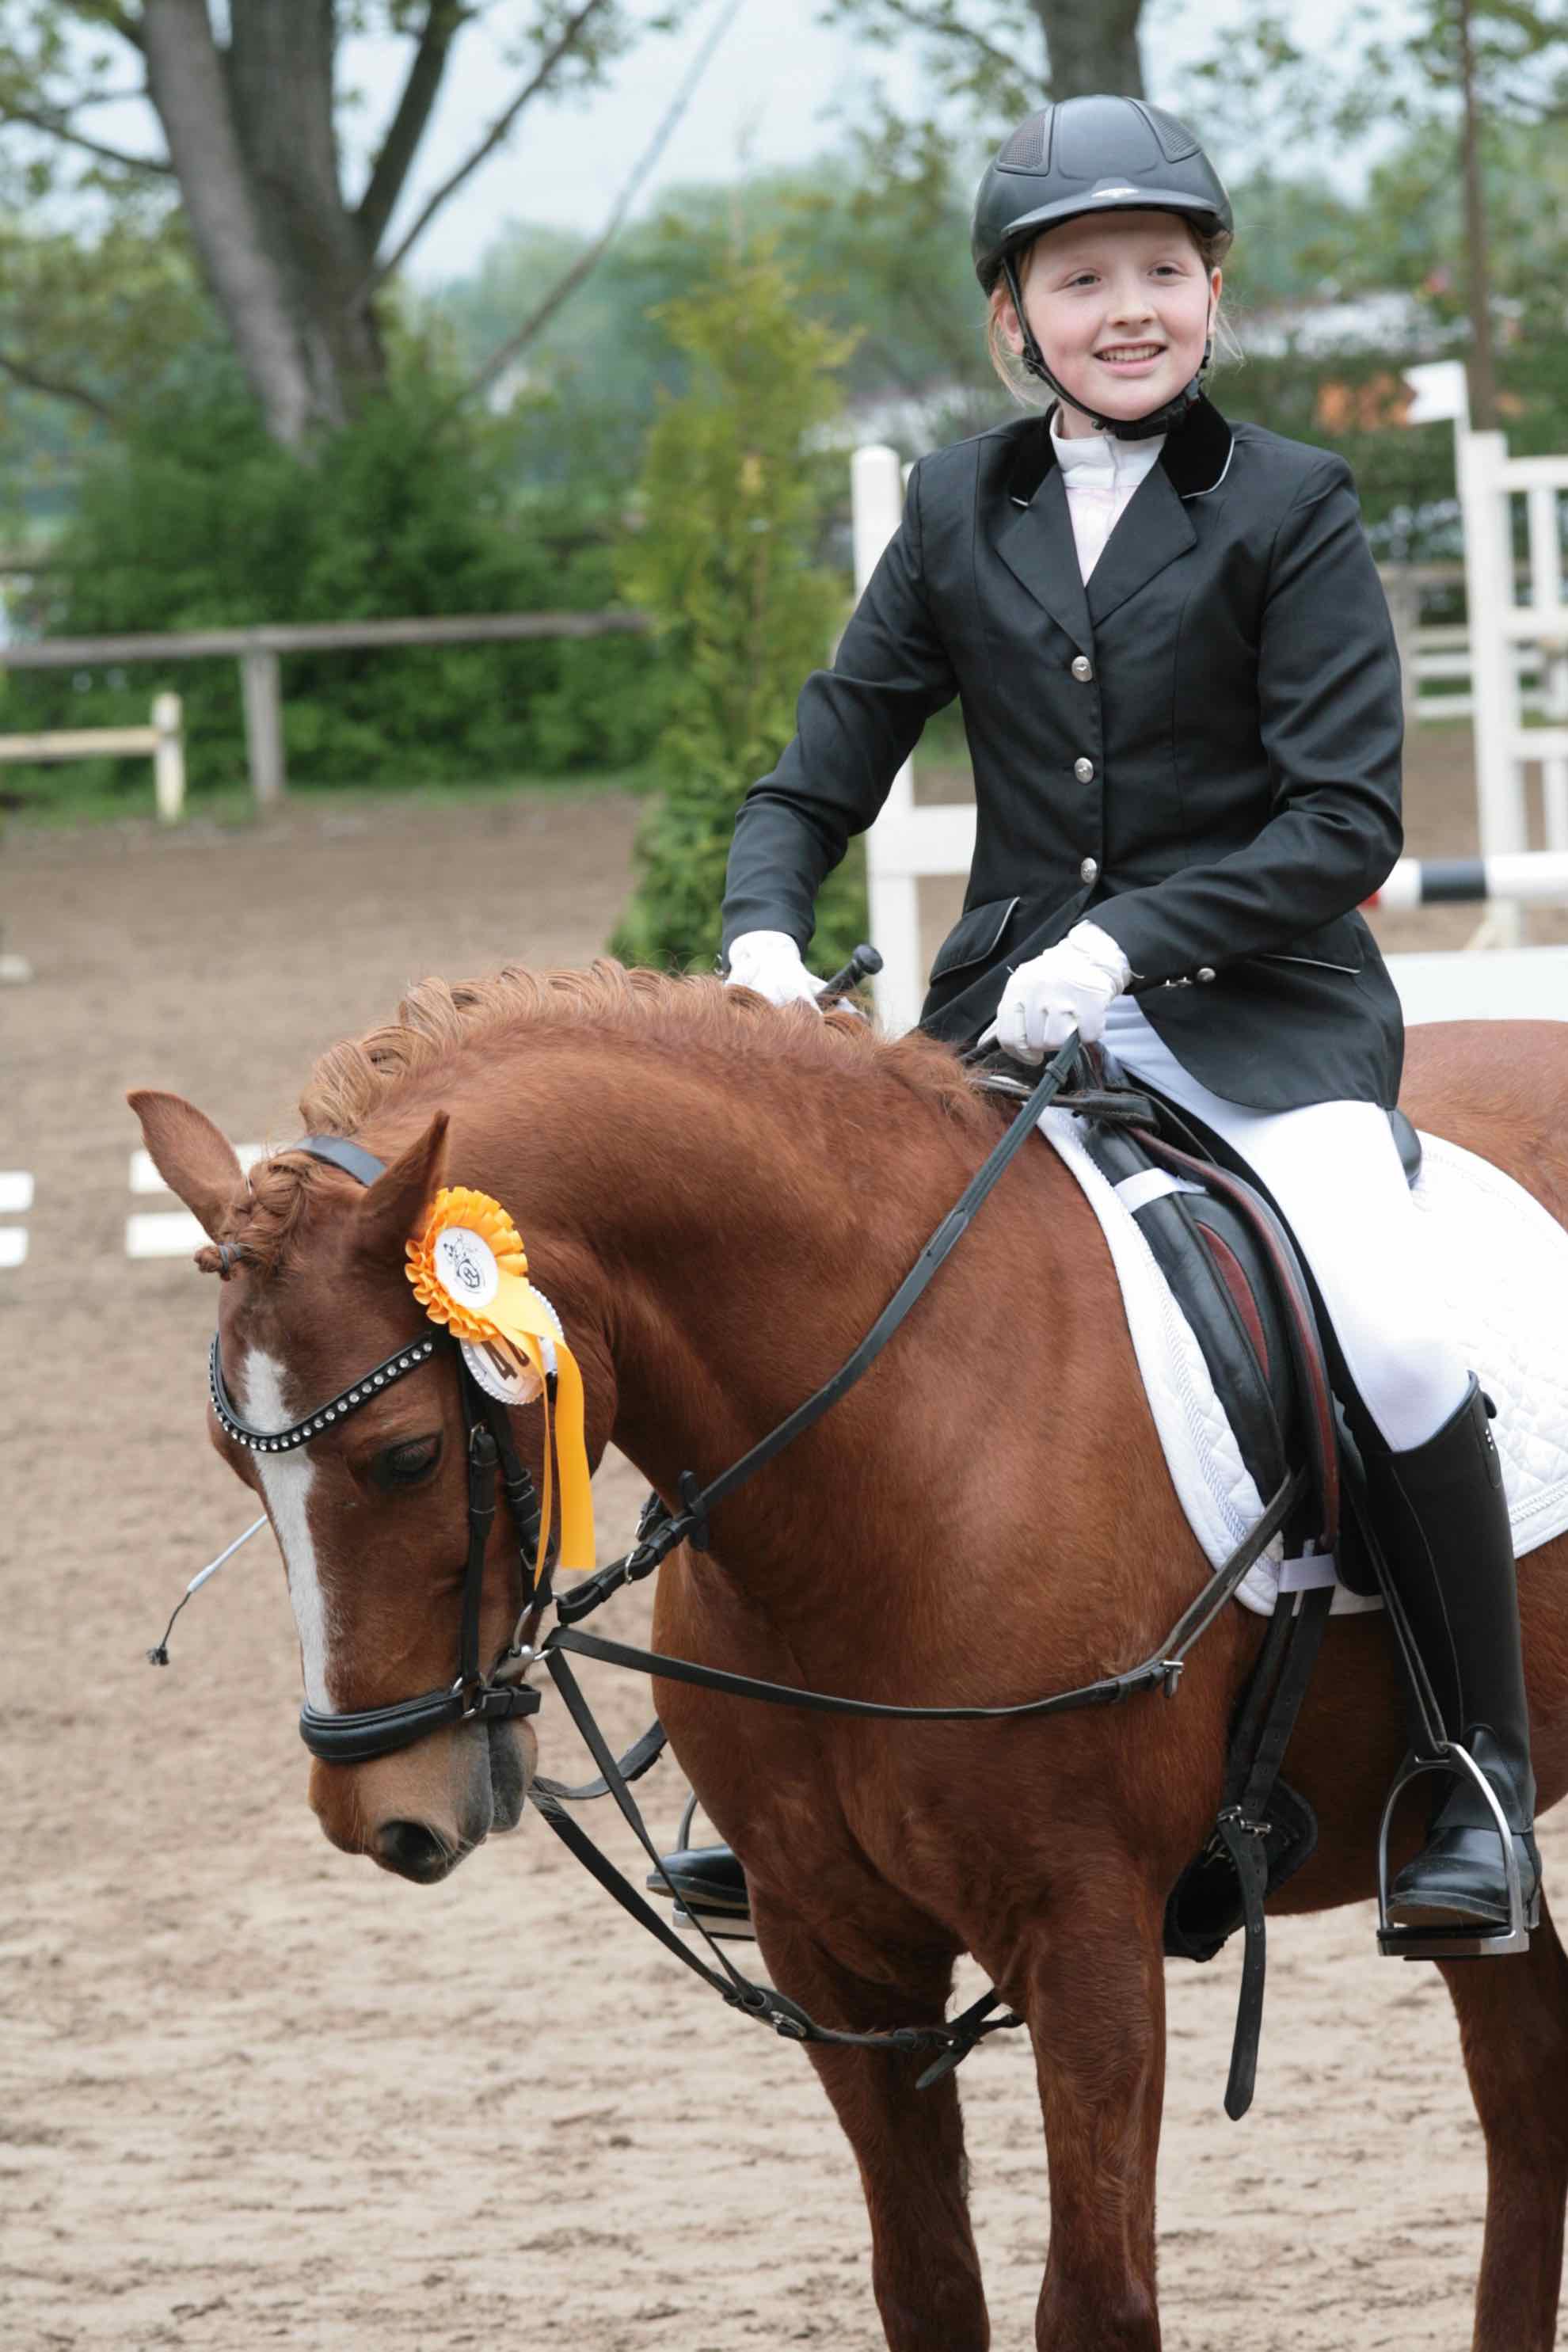 Prüfung 28/1 Reiterwettbewerb für Ponys - 1. Platz - Hannah Schmitt auf Pedro 961 - PSG Birkenbusch Ober-Modau e.V.